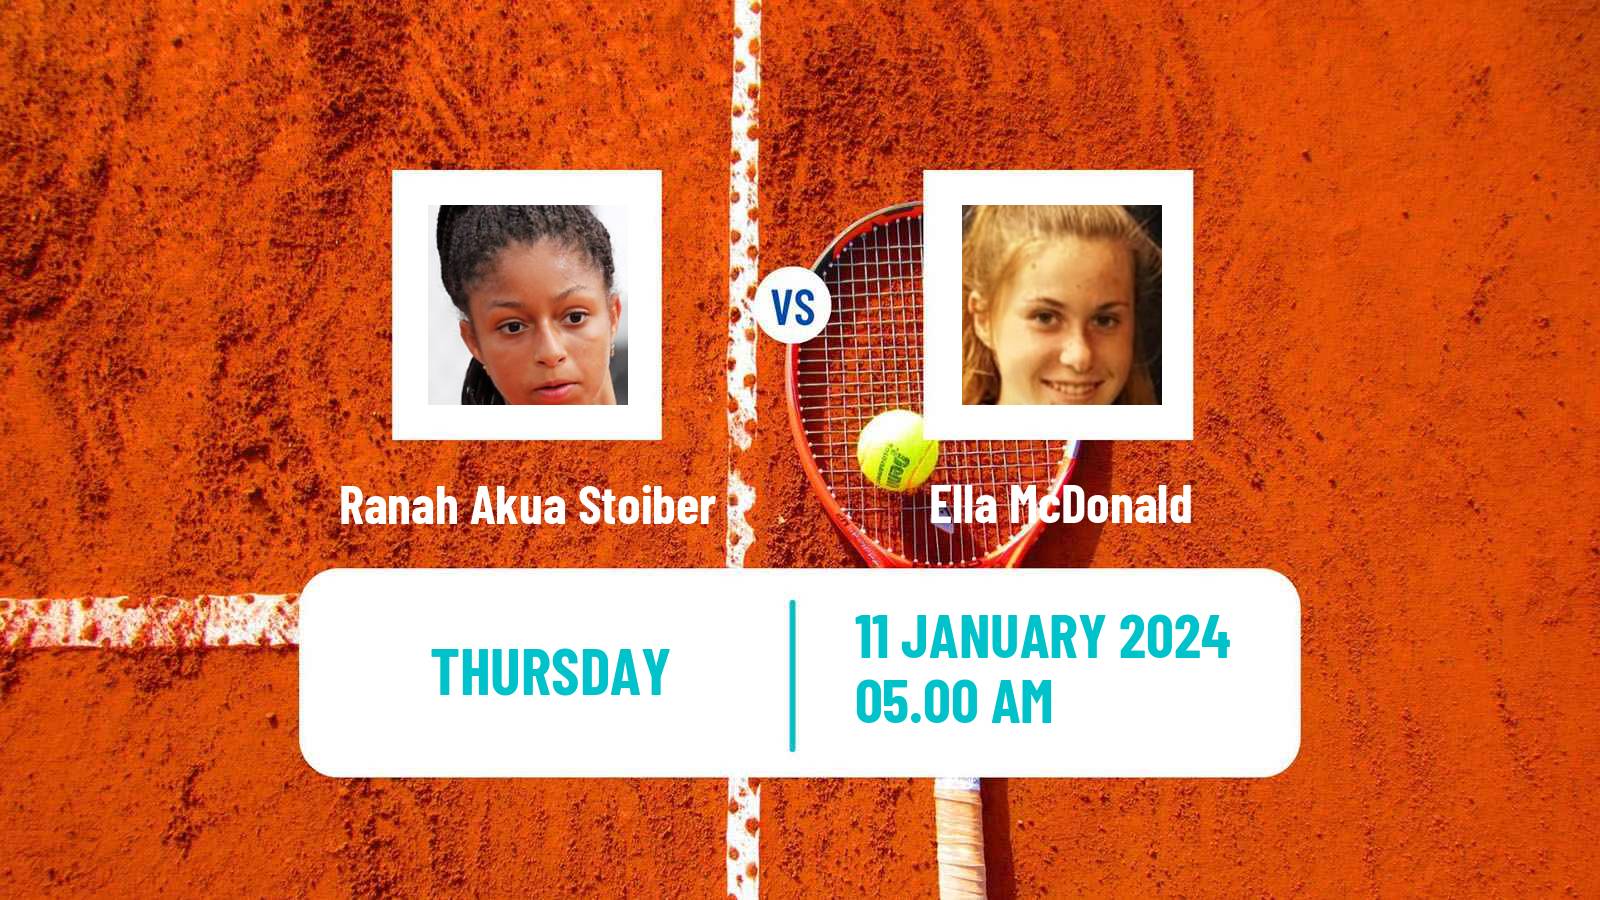 Tennis ITF W35 Loughborough Women Ranah Akua Stoiber - Ella McDonald